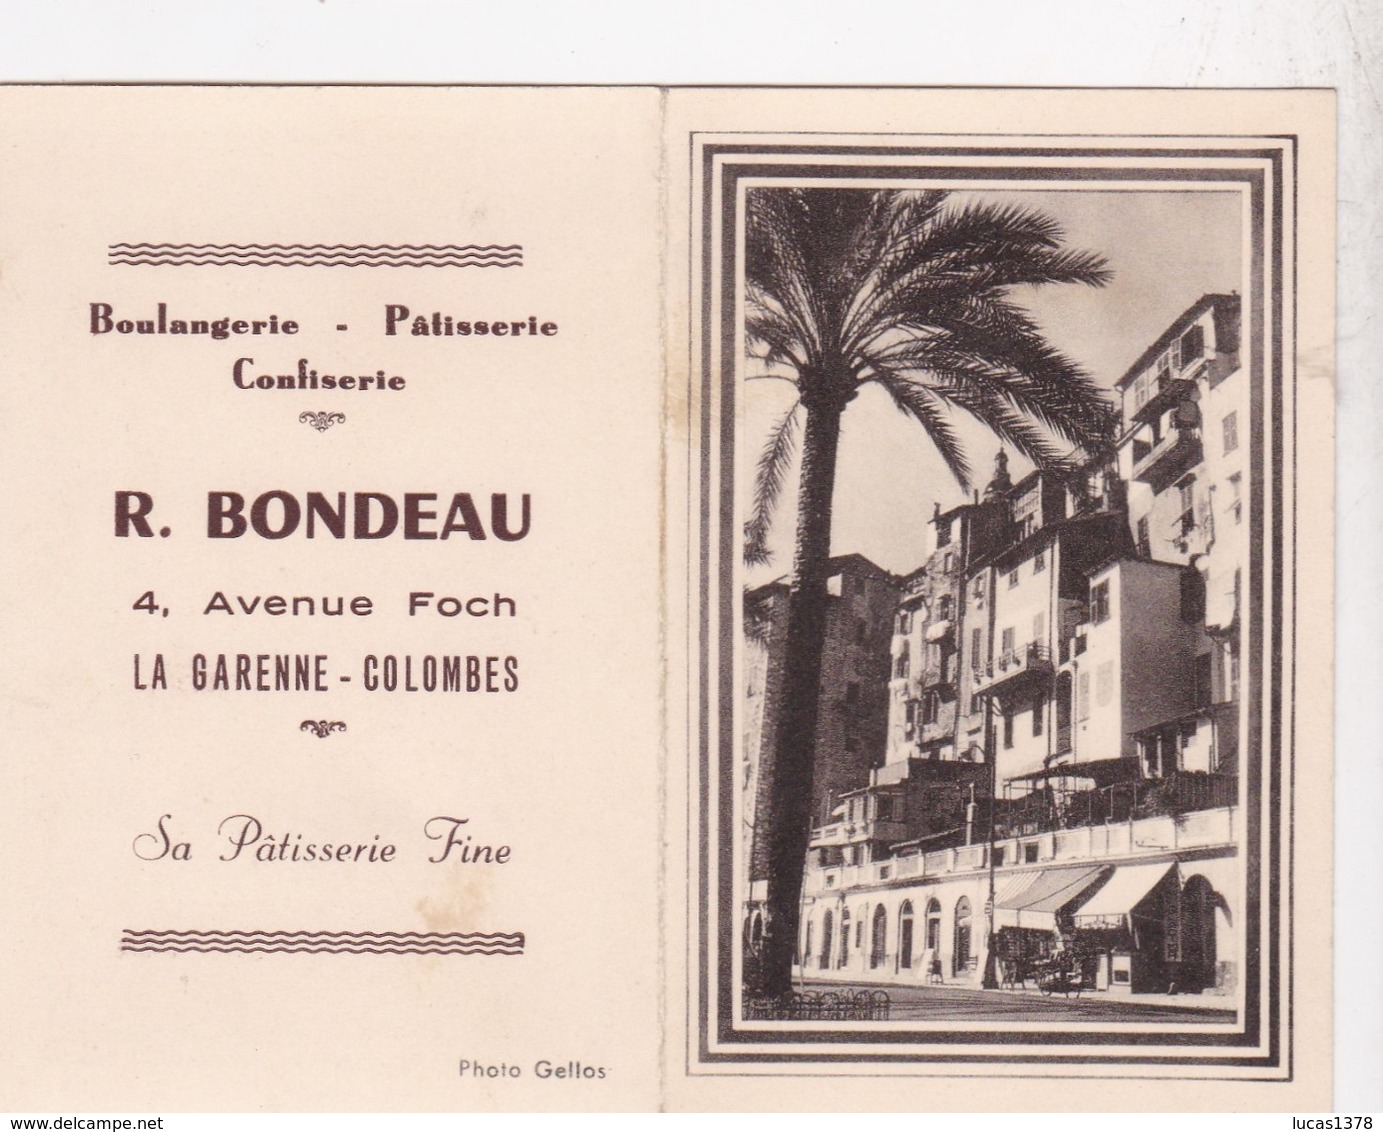 CALENDRIER 1956 / LA GARENNE COLOMBES / BOULANGERIE PATISSERIE BONDEAU / 4 AVENUE FOCH - Small : 1941-60